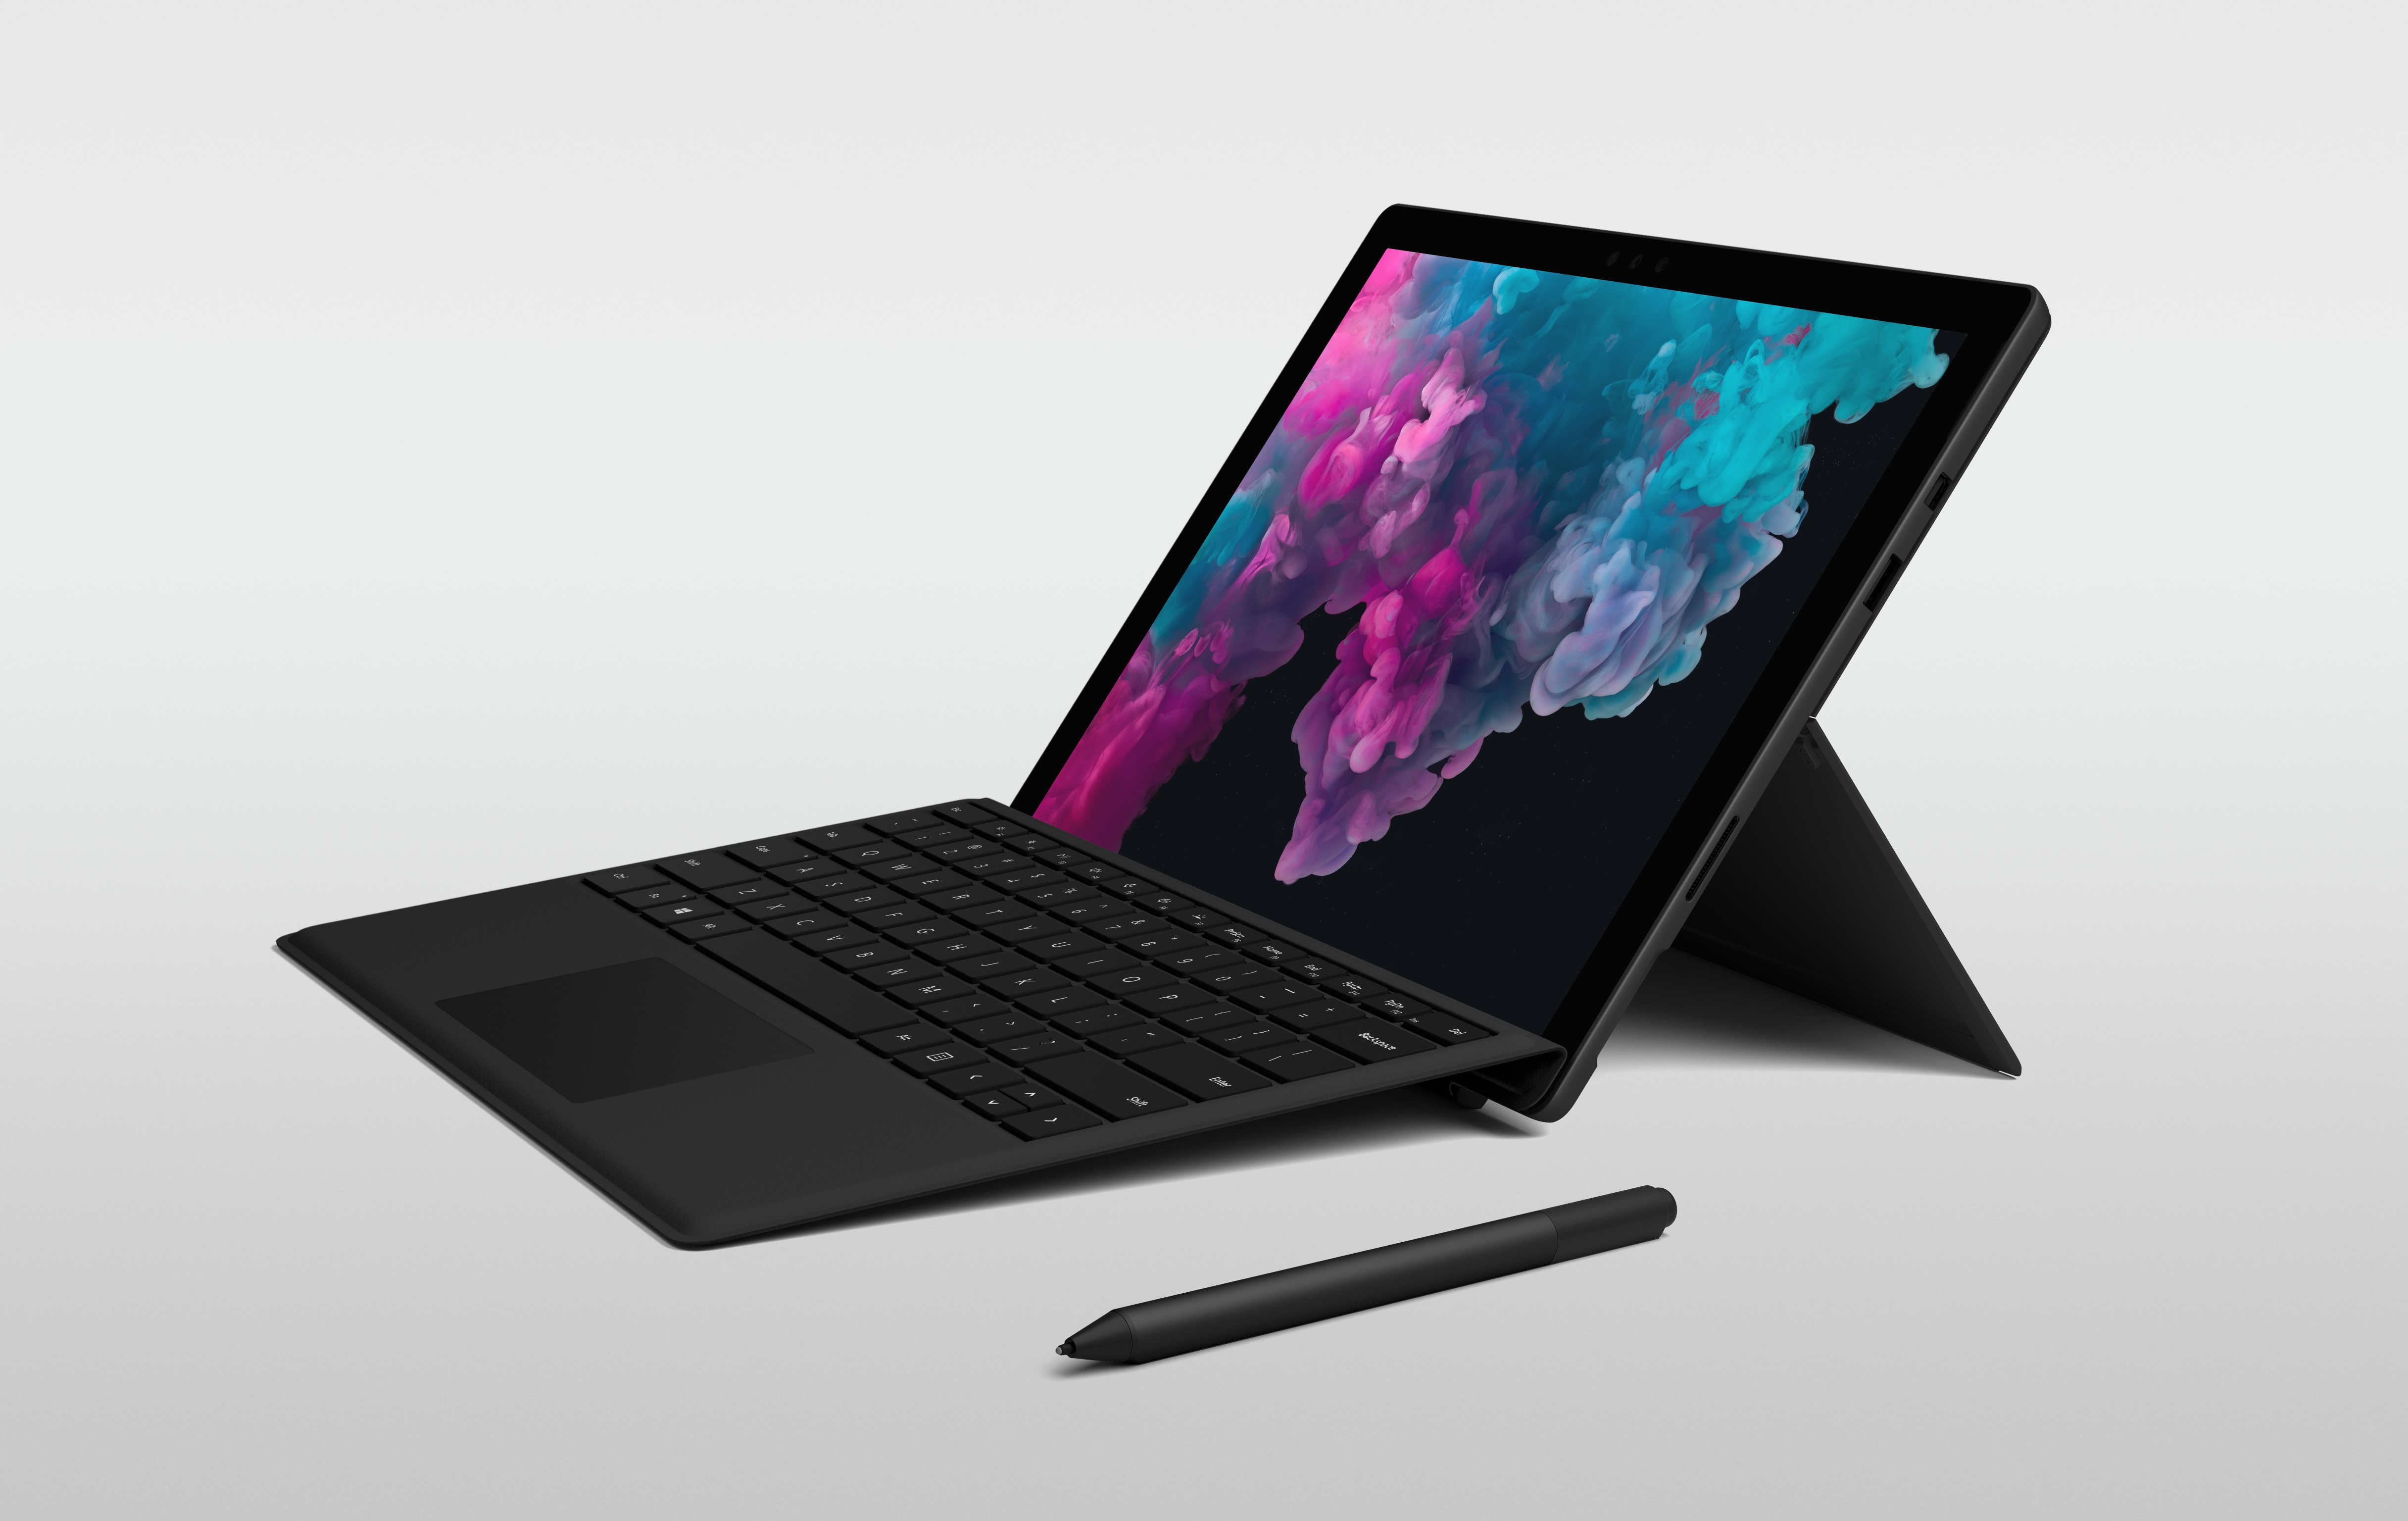 Microsoft Press Photo of Surface Pro 6